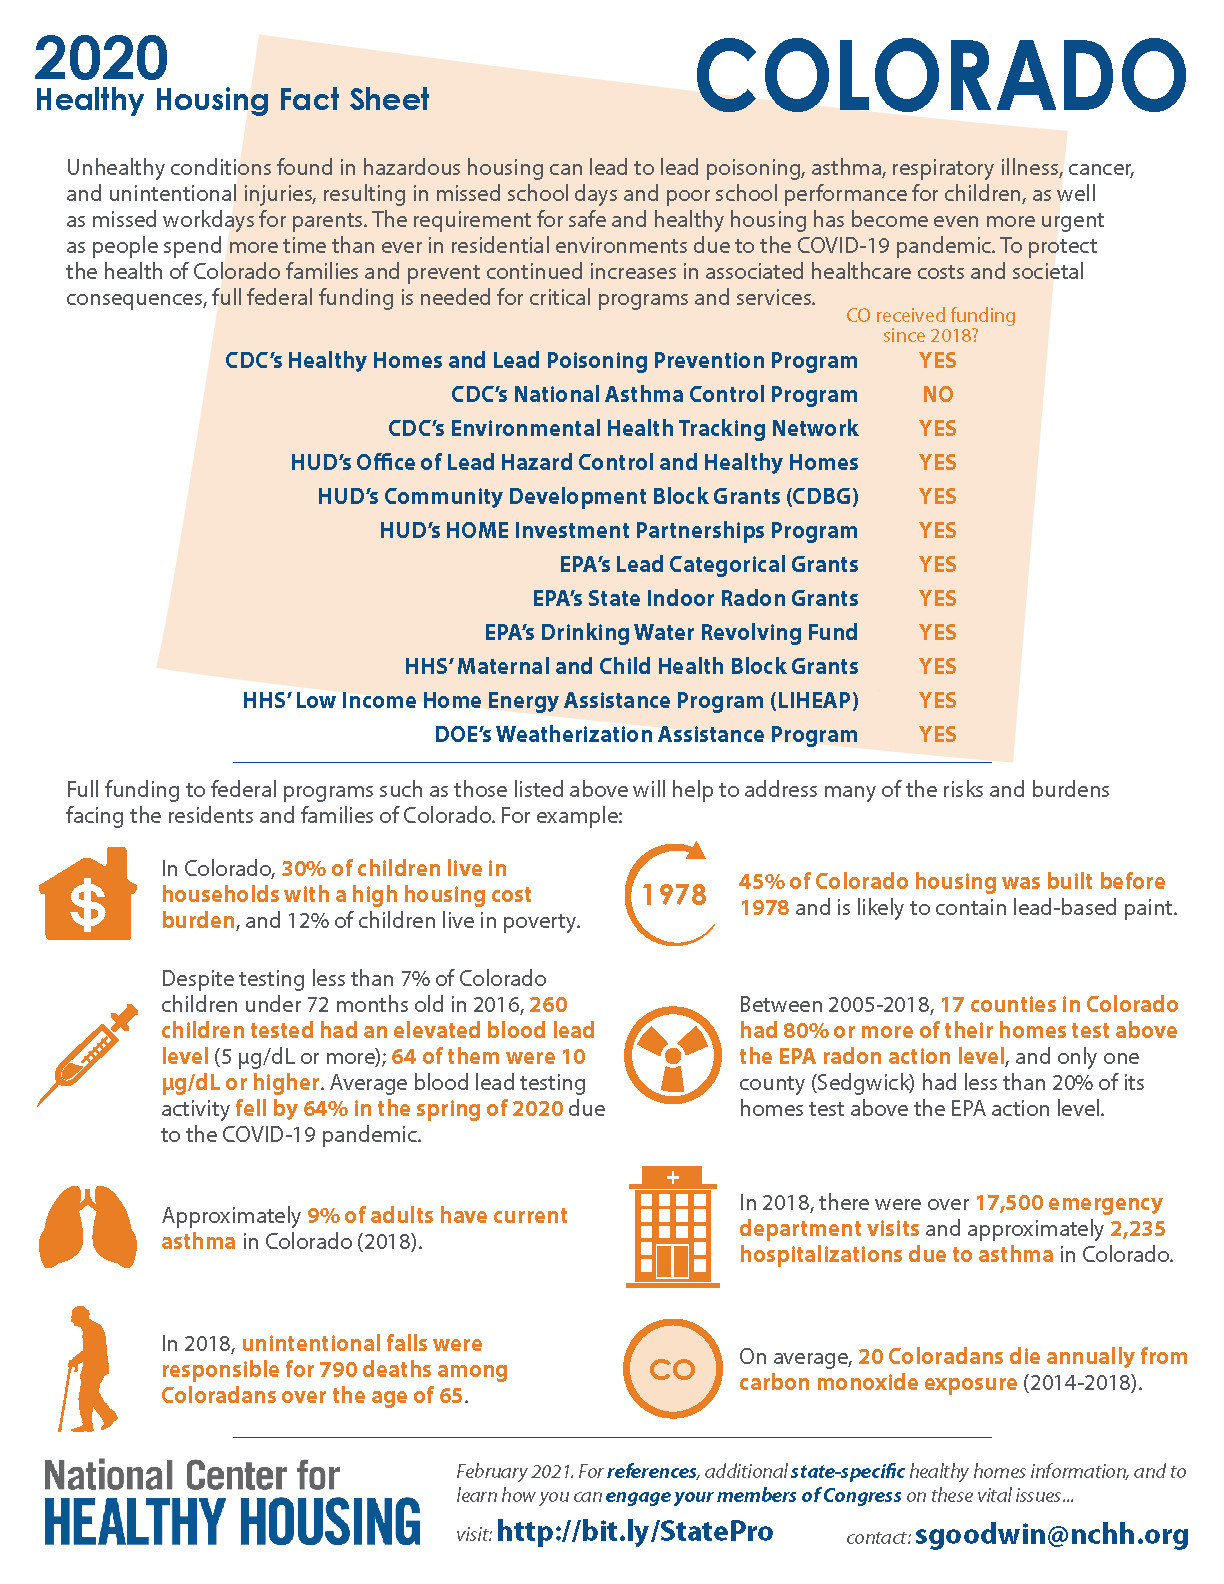 Healthy Housing Fact Sheet - Colorado 2020